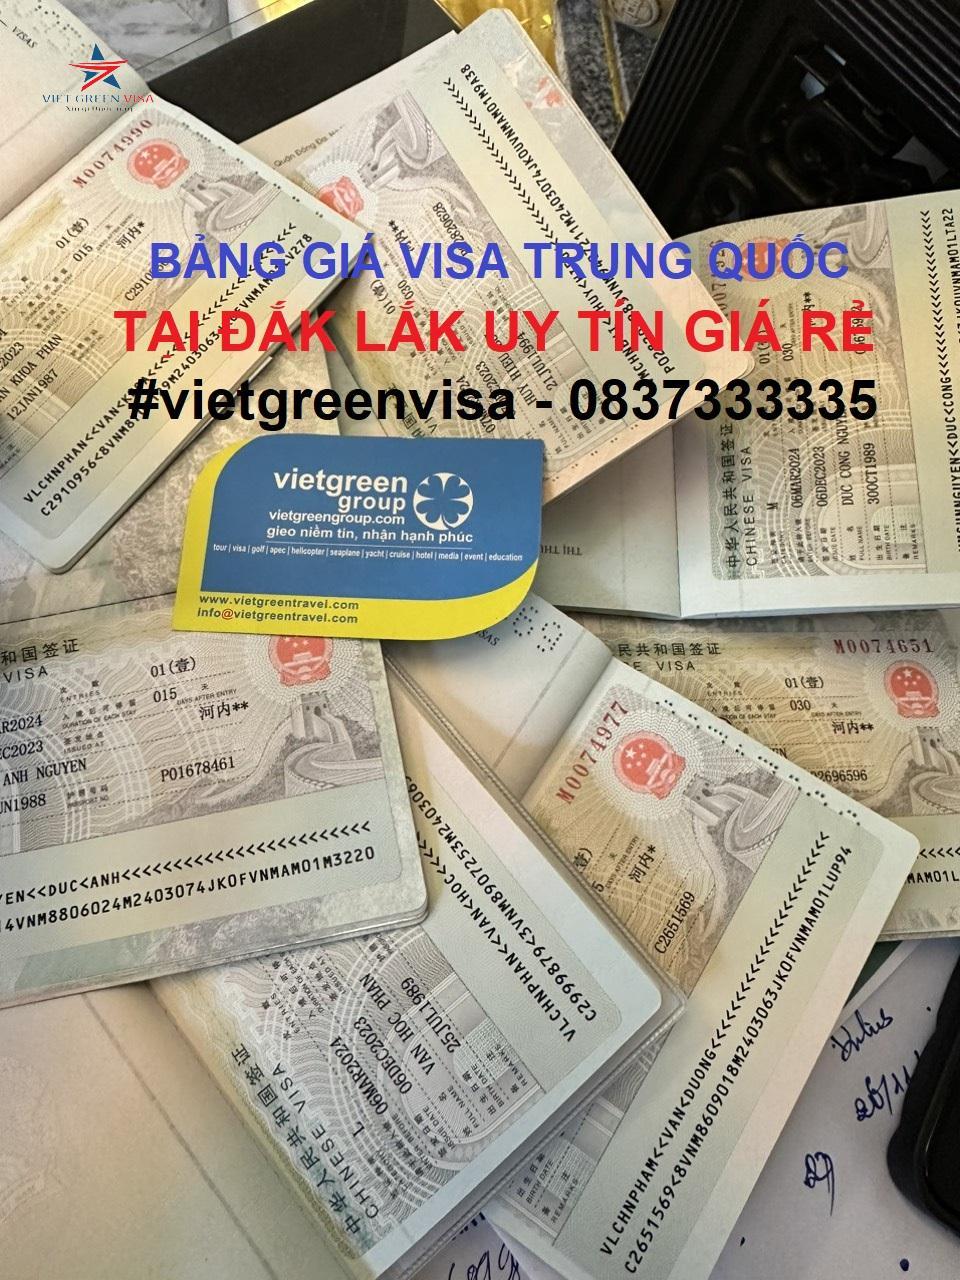 Dịch vụ xin visa Trung Quốc tại Đắk Lắk uy tín giá rẻ